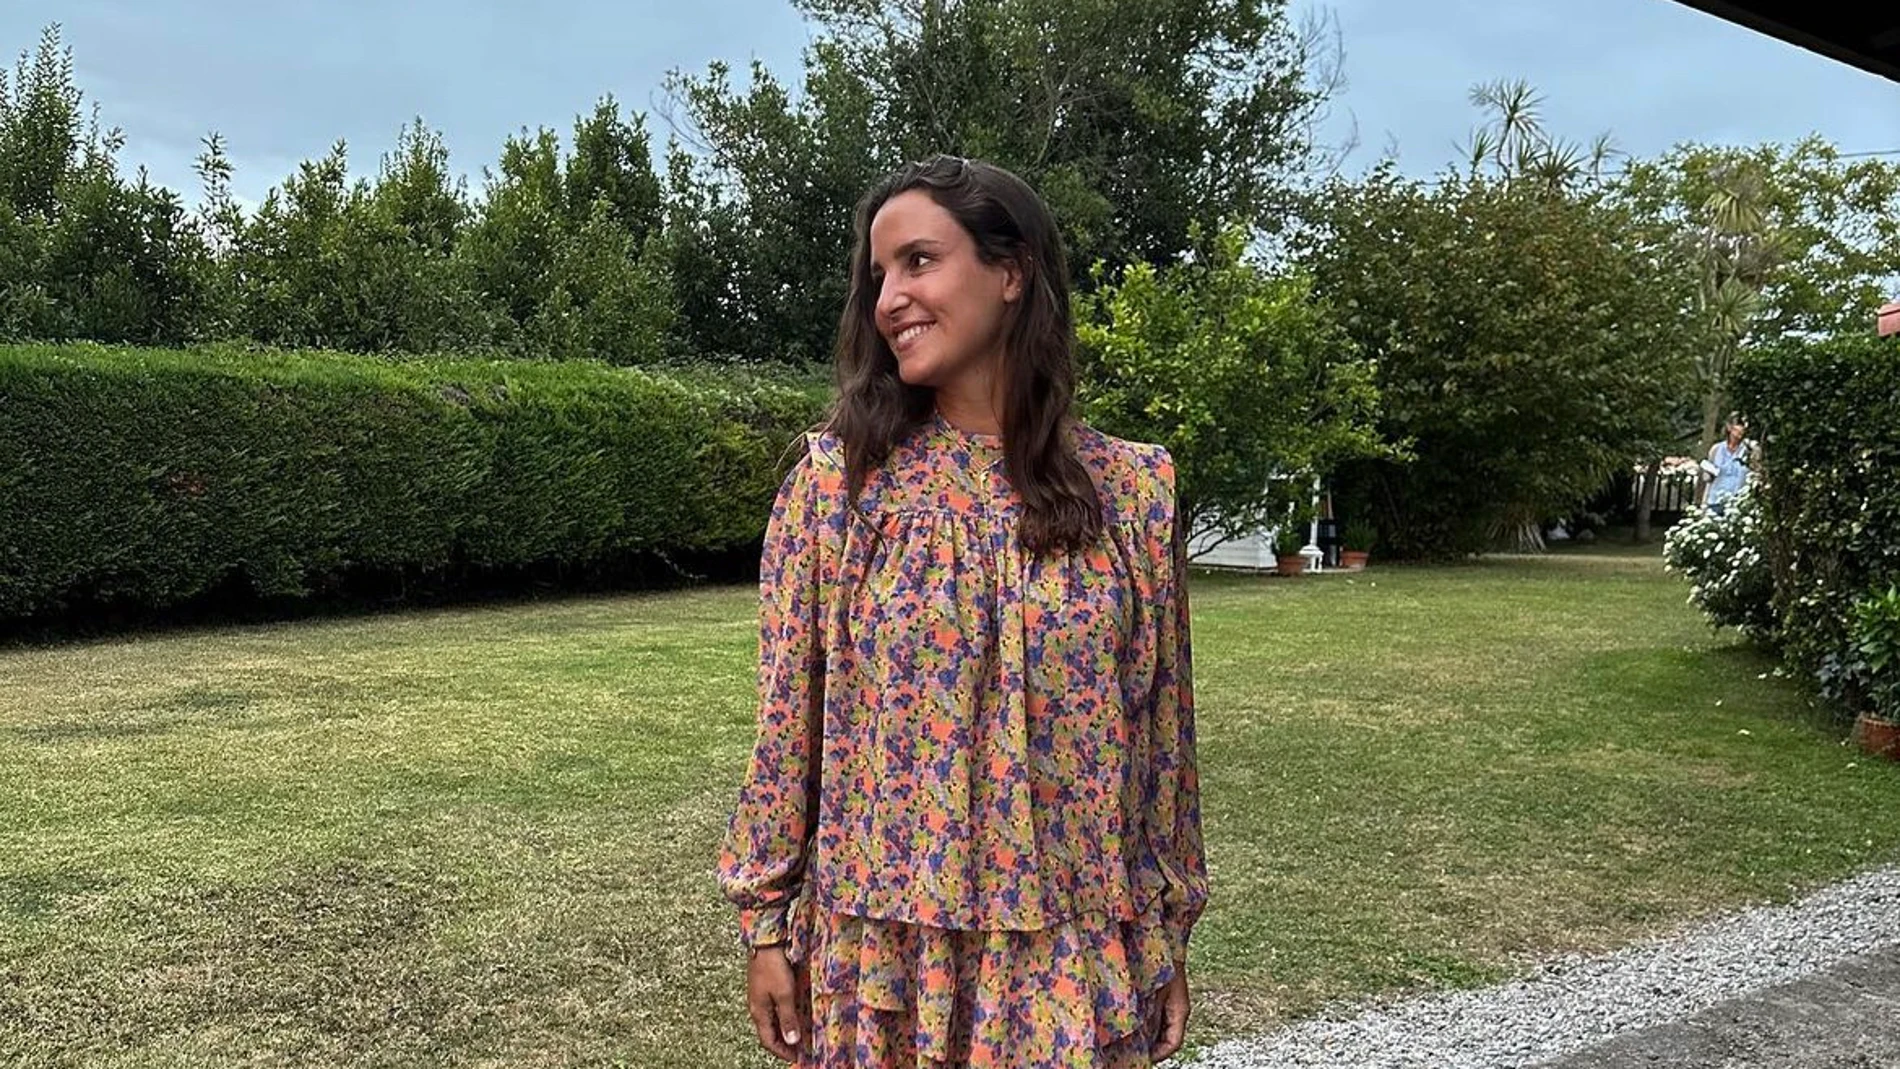 Si Sara Baceiredo ayer llevaba la falda que mejor sienta, Marta Pombo nos enseña hoy el total look compuesto por esta falda y la camisa, ideal para los veranos en el norte